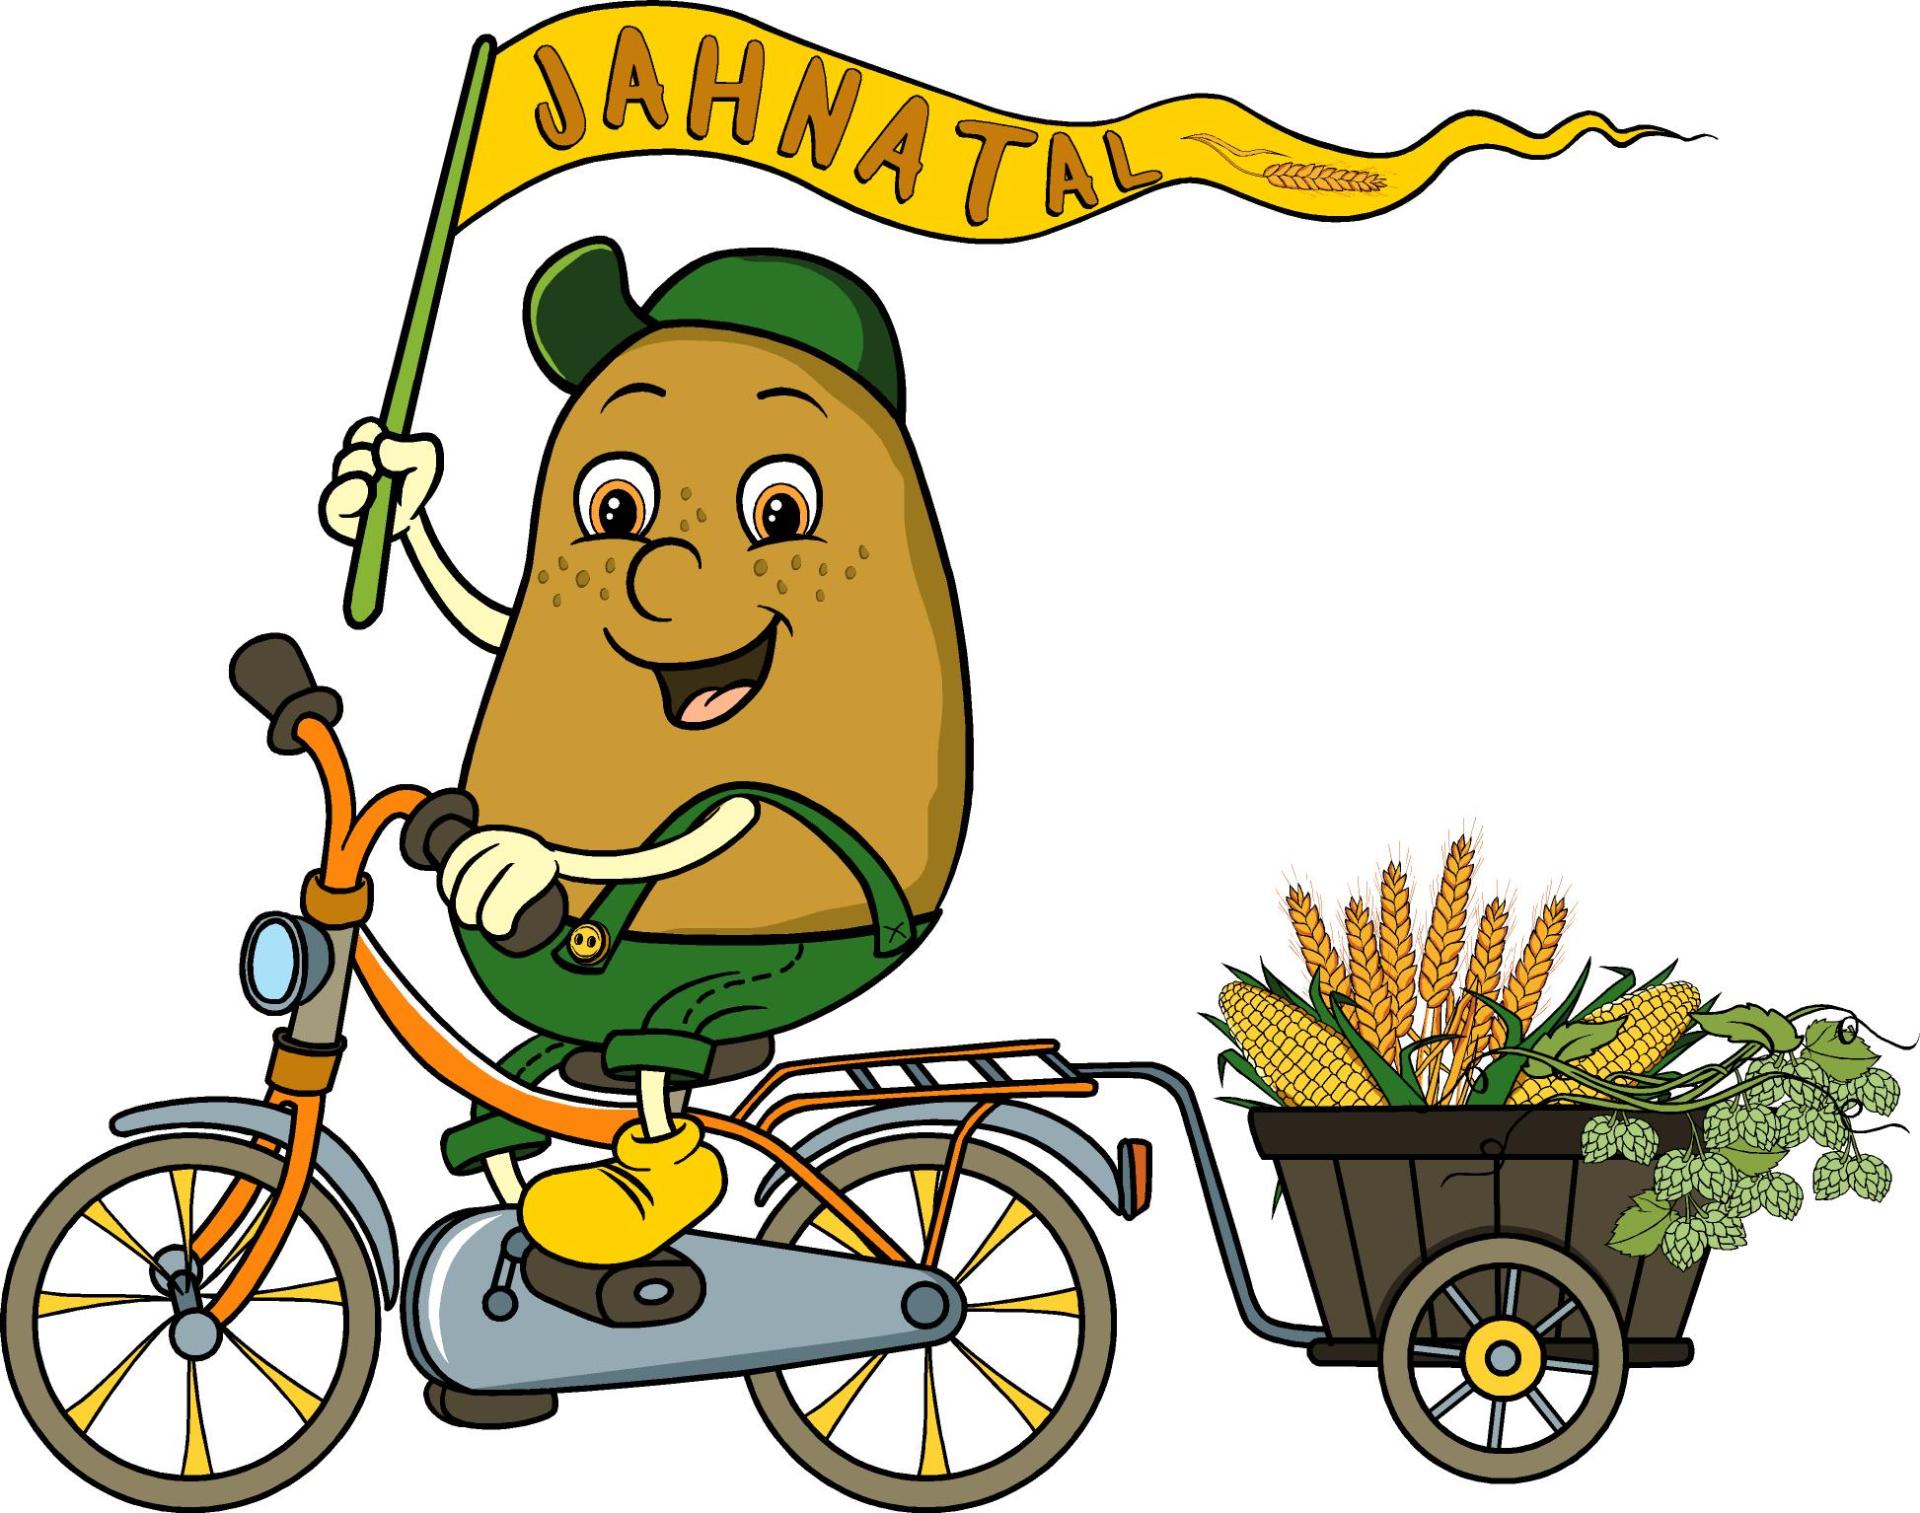 Jahn-Kartoffel auf dem Rad